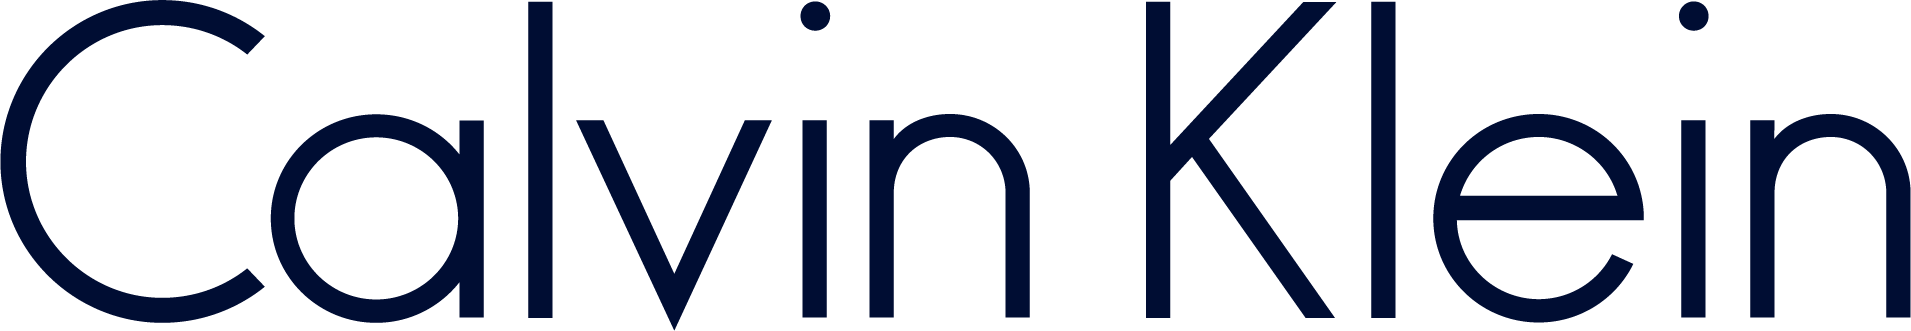 Calvin Klein logo.